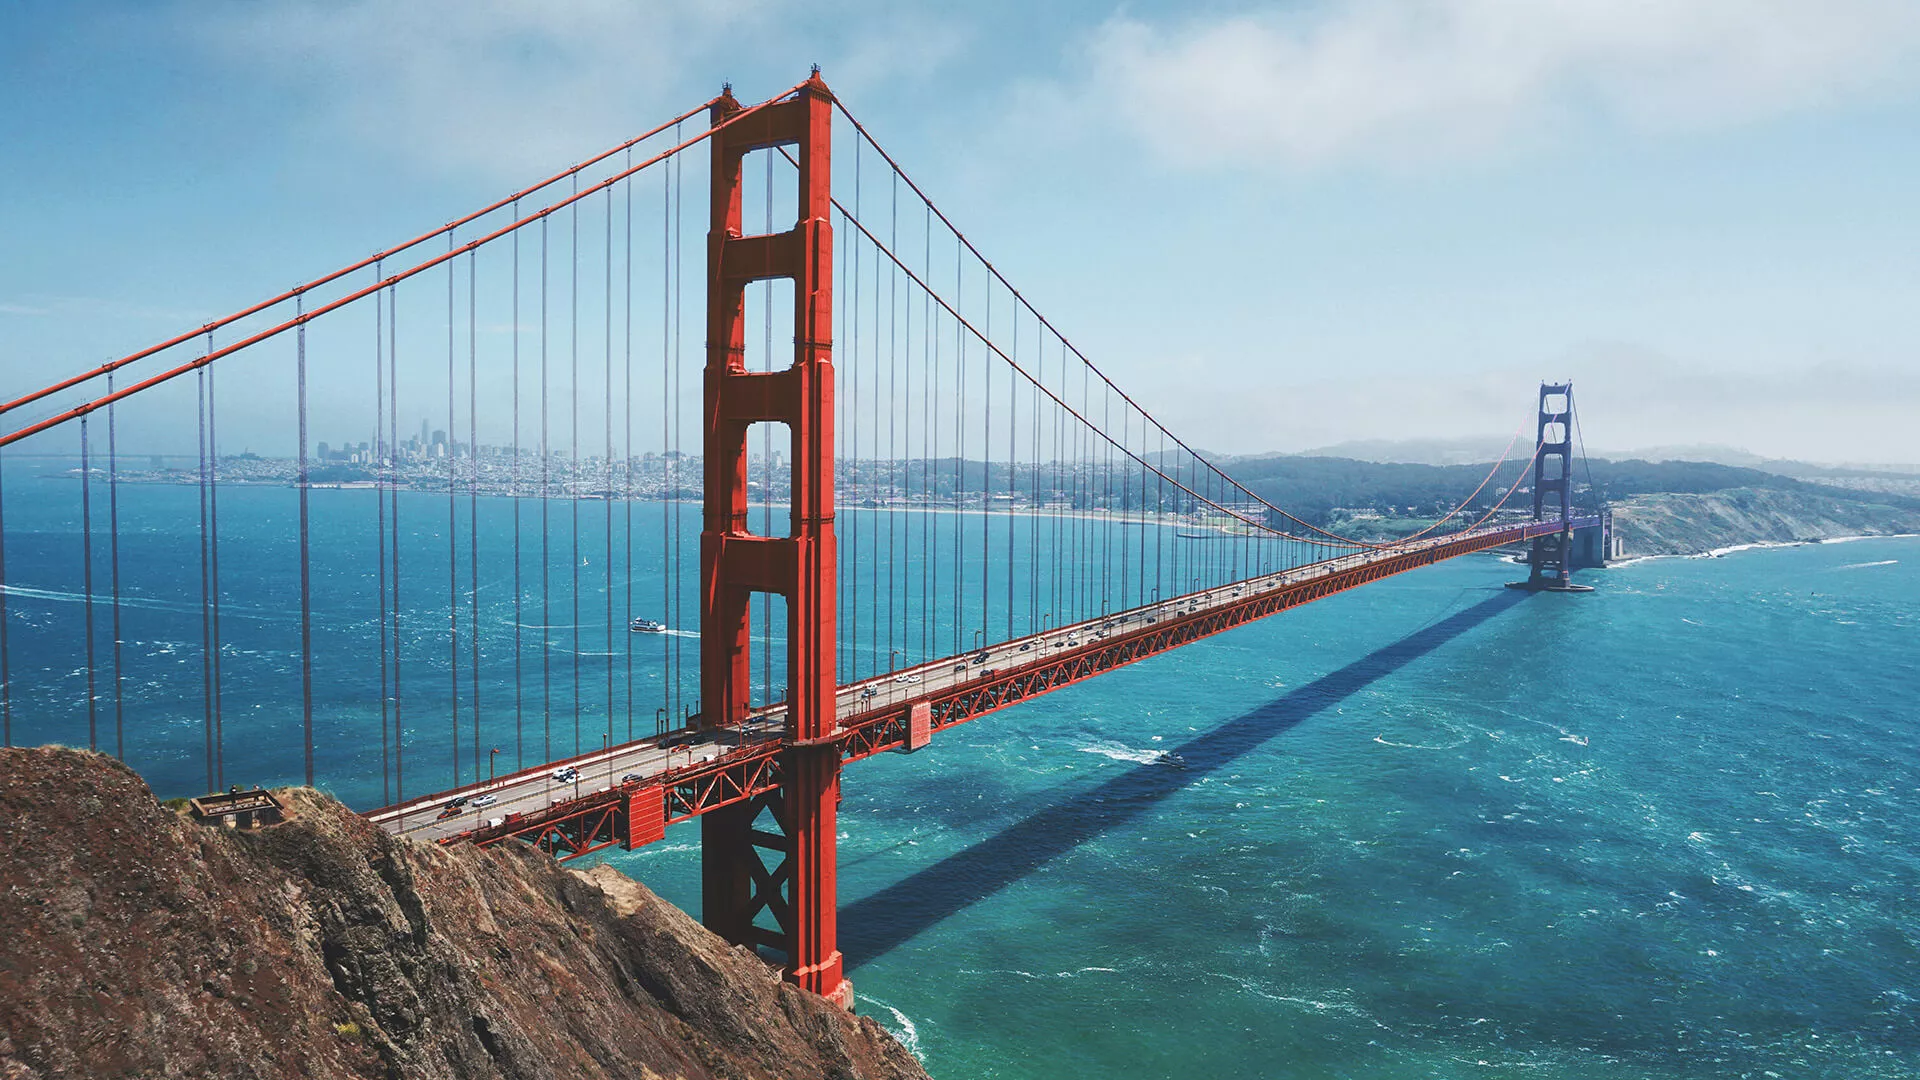 Städtereise San Francisco USA - Golden Gate Bridge - Urlaub in Amerika mit Flug & Hotel